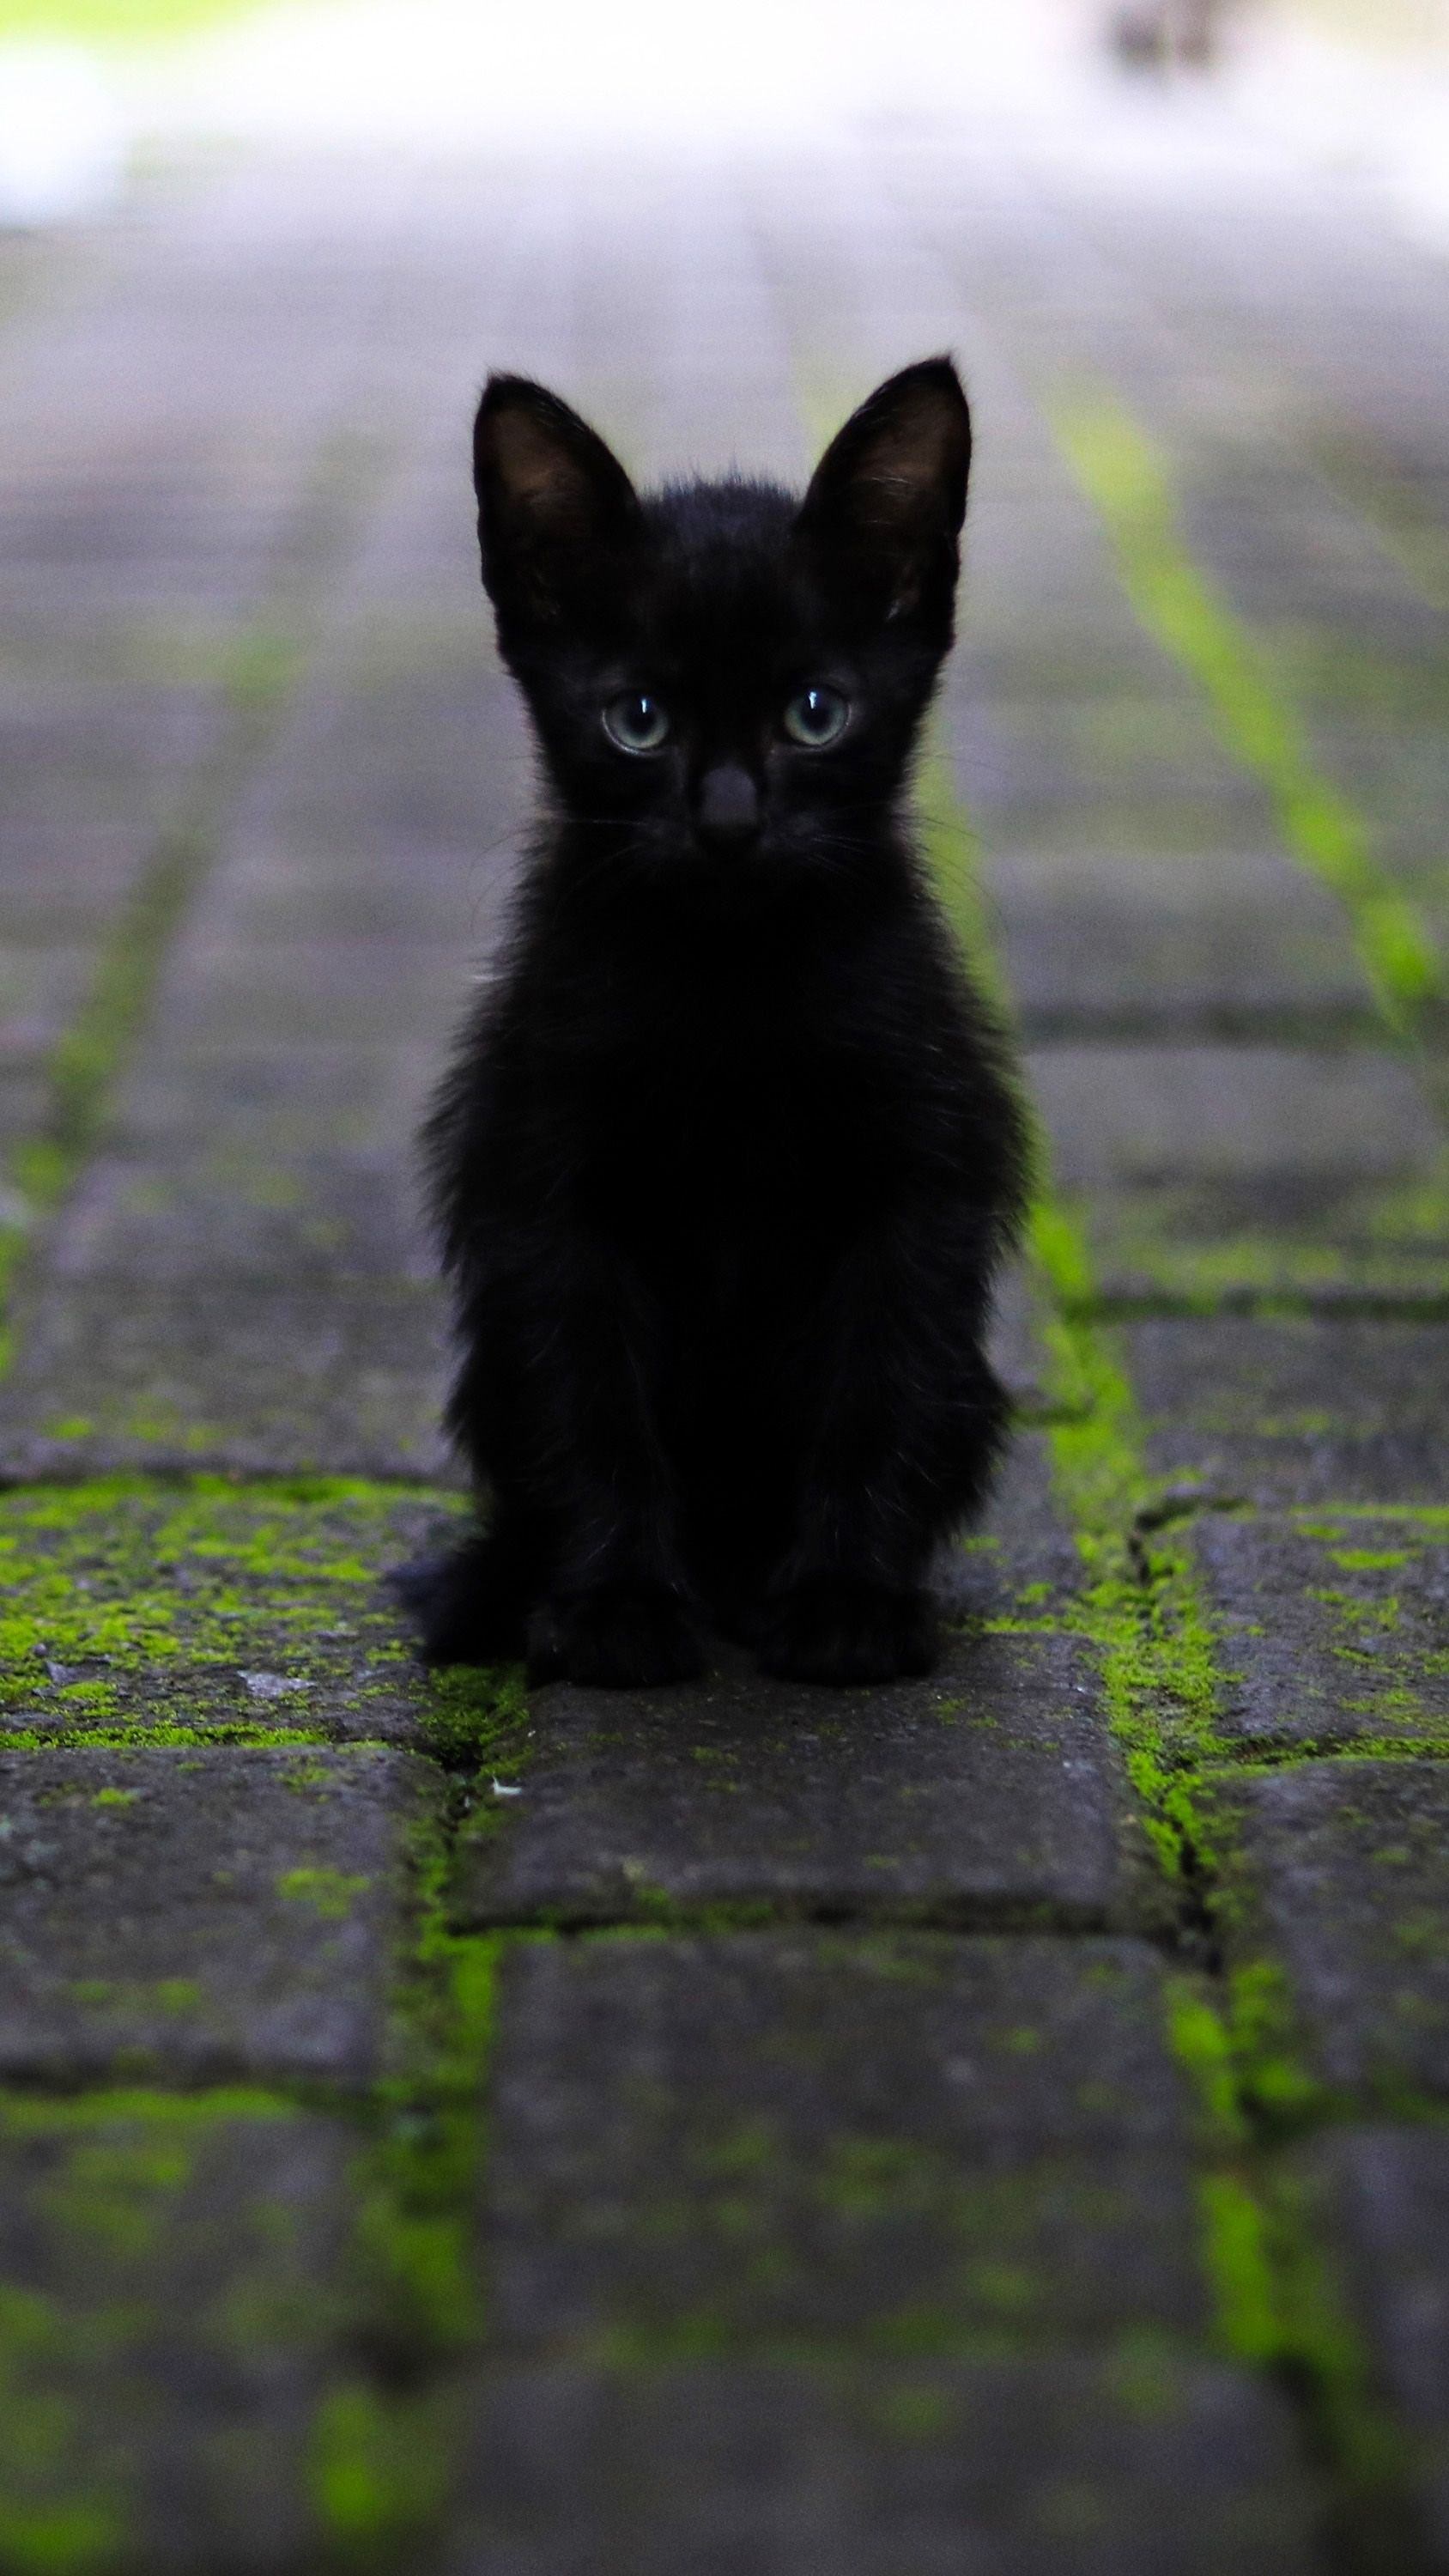 Перебежала черная кошка что делать